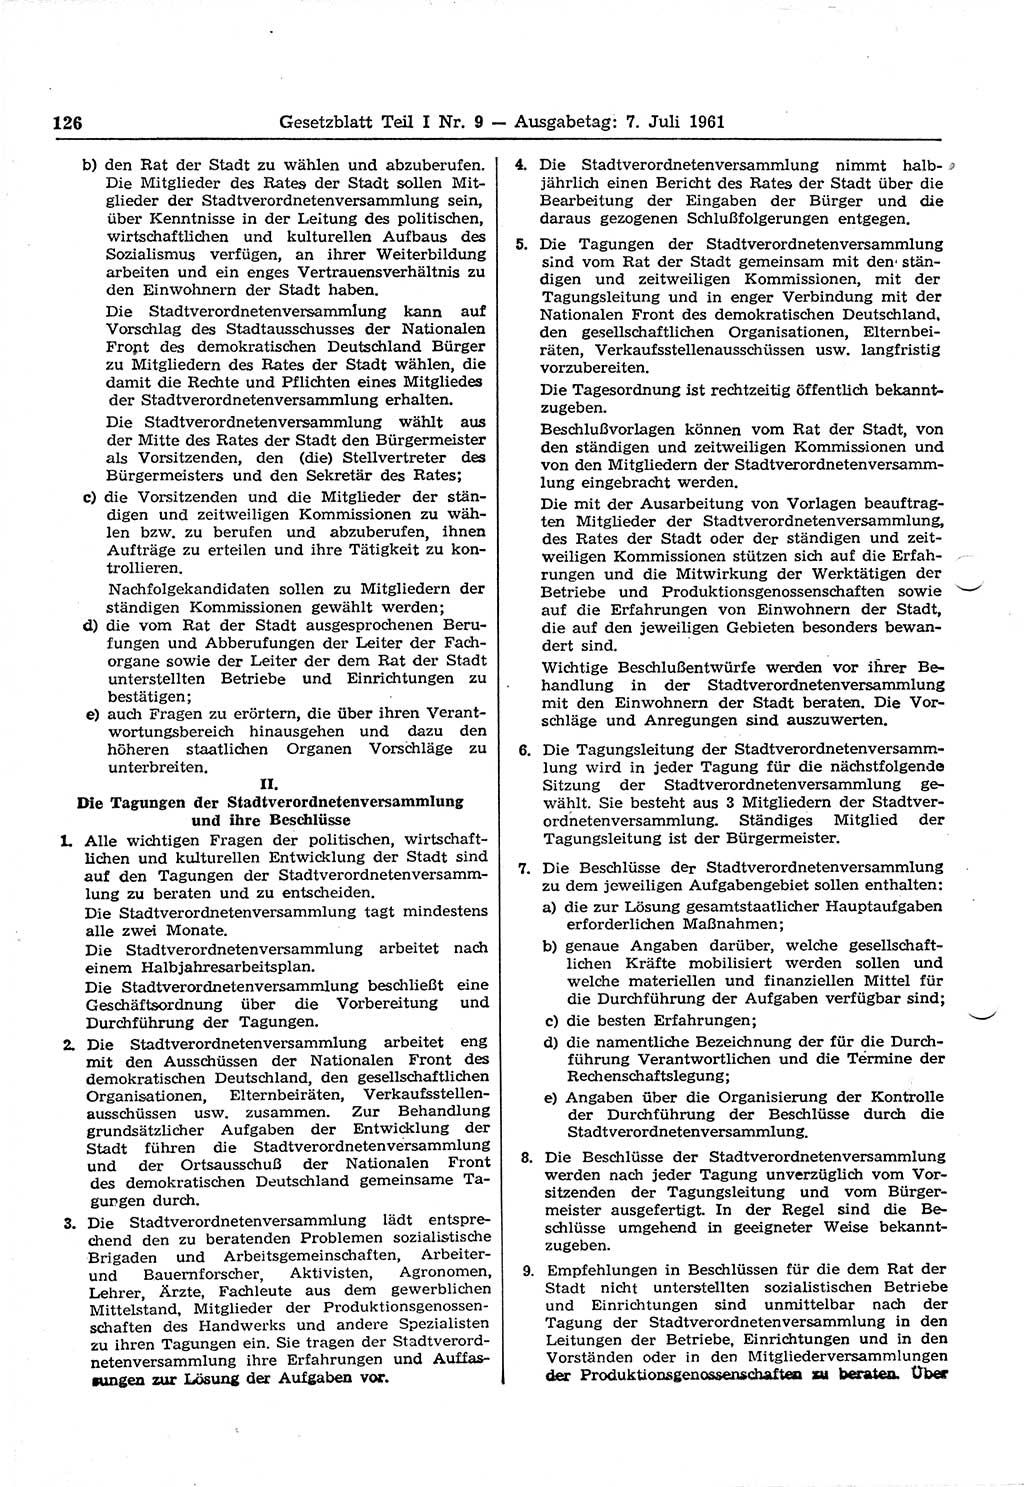 Gesetzblatt (GBl.) der Deutschen Demokratischen Republik (DDR) Teil Ⅰ 1961, Seite 126 (GBl. DDR Ⅰ 1961, S. 126)